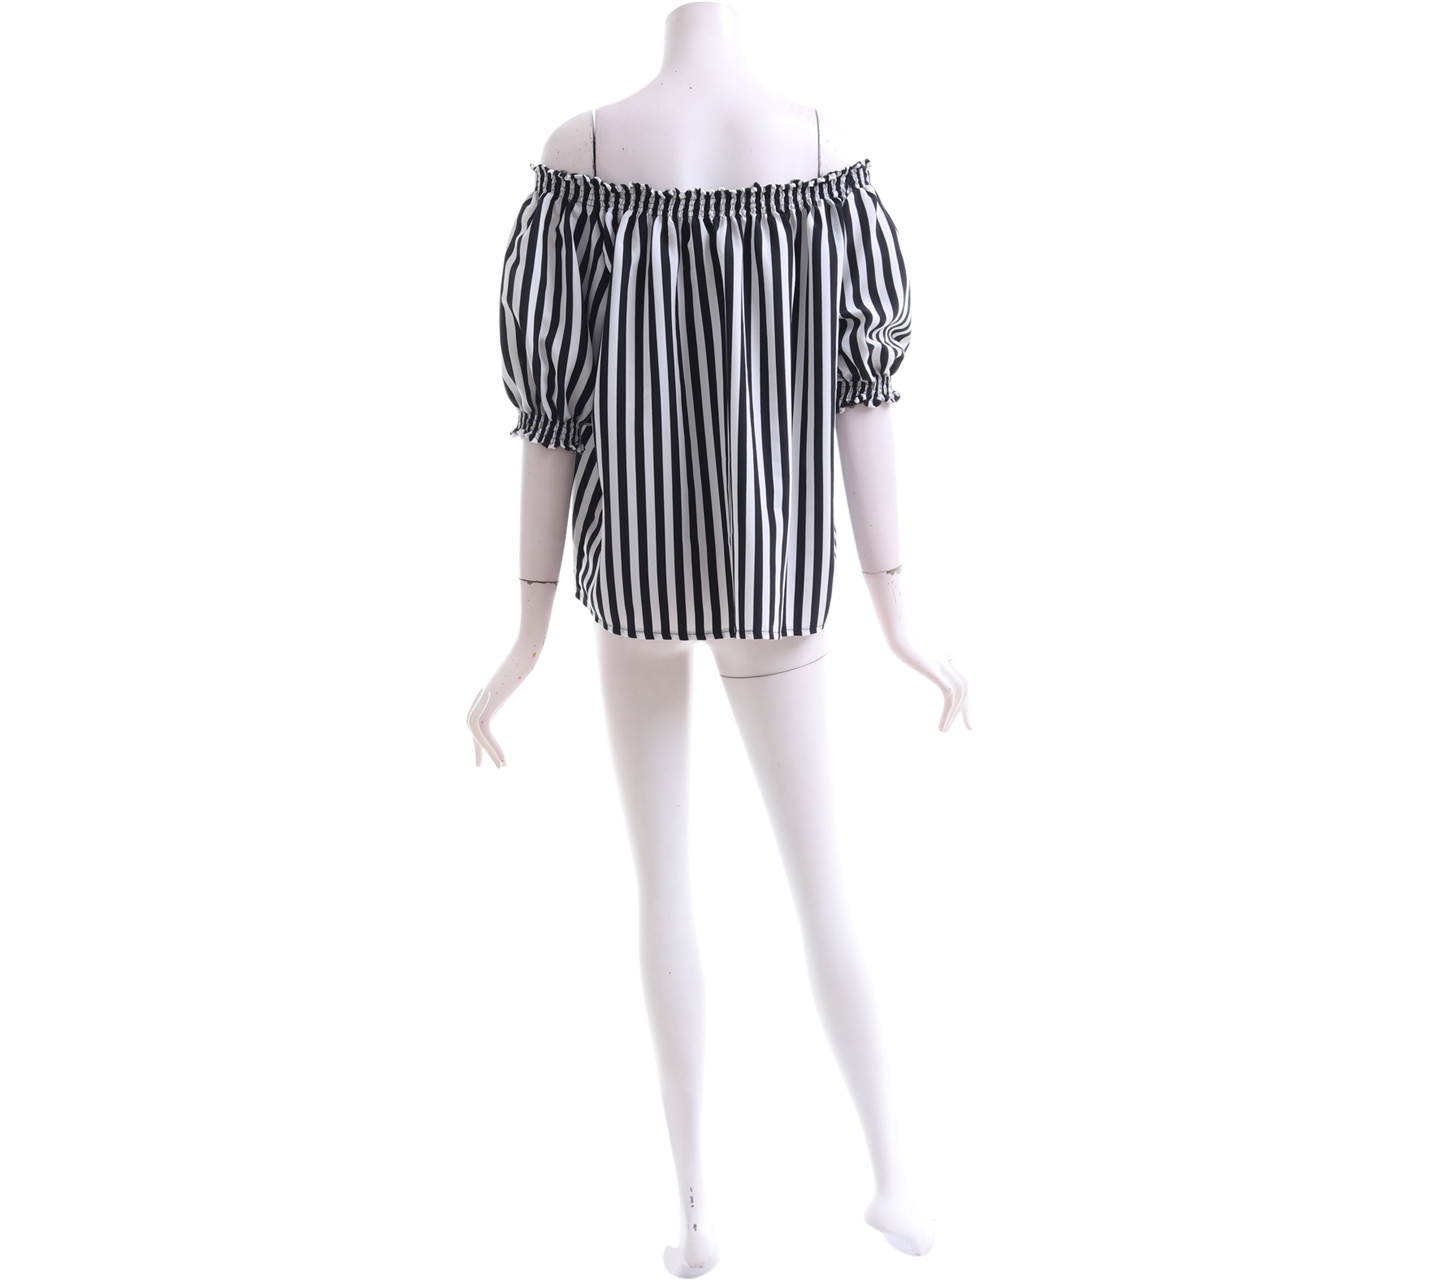 KYVA Black & White Striped Blouse